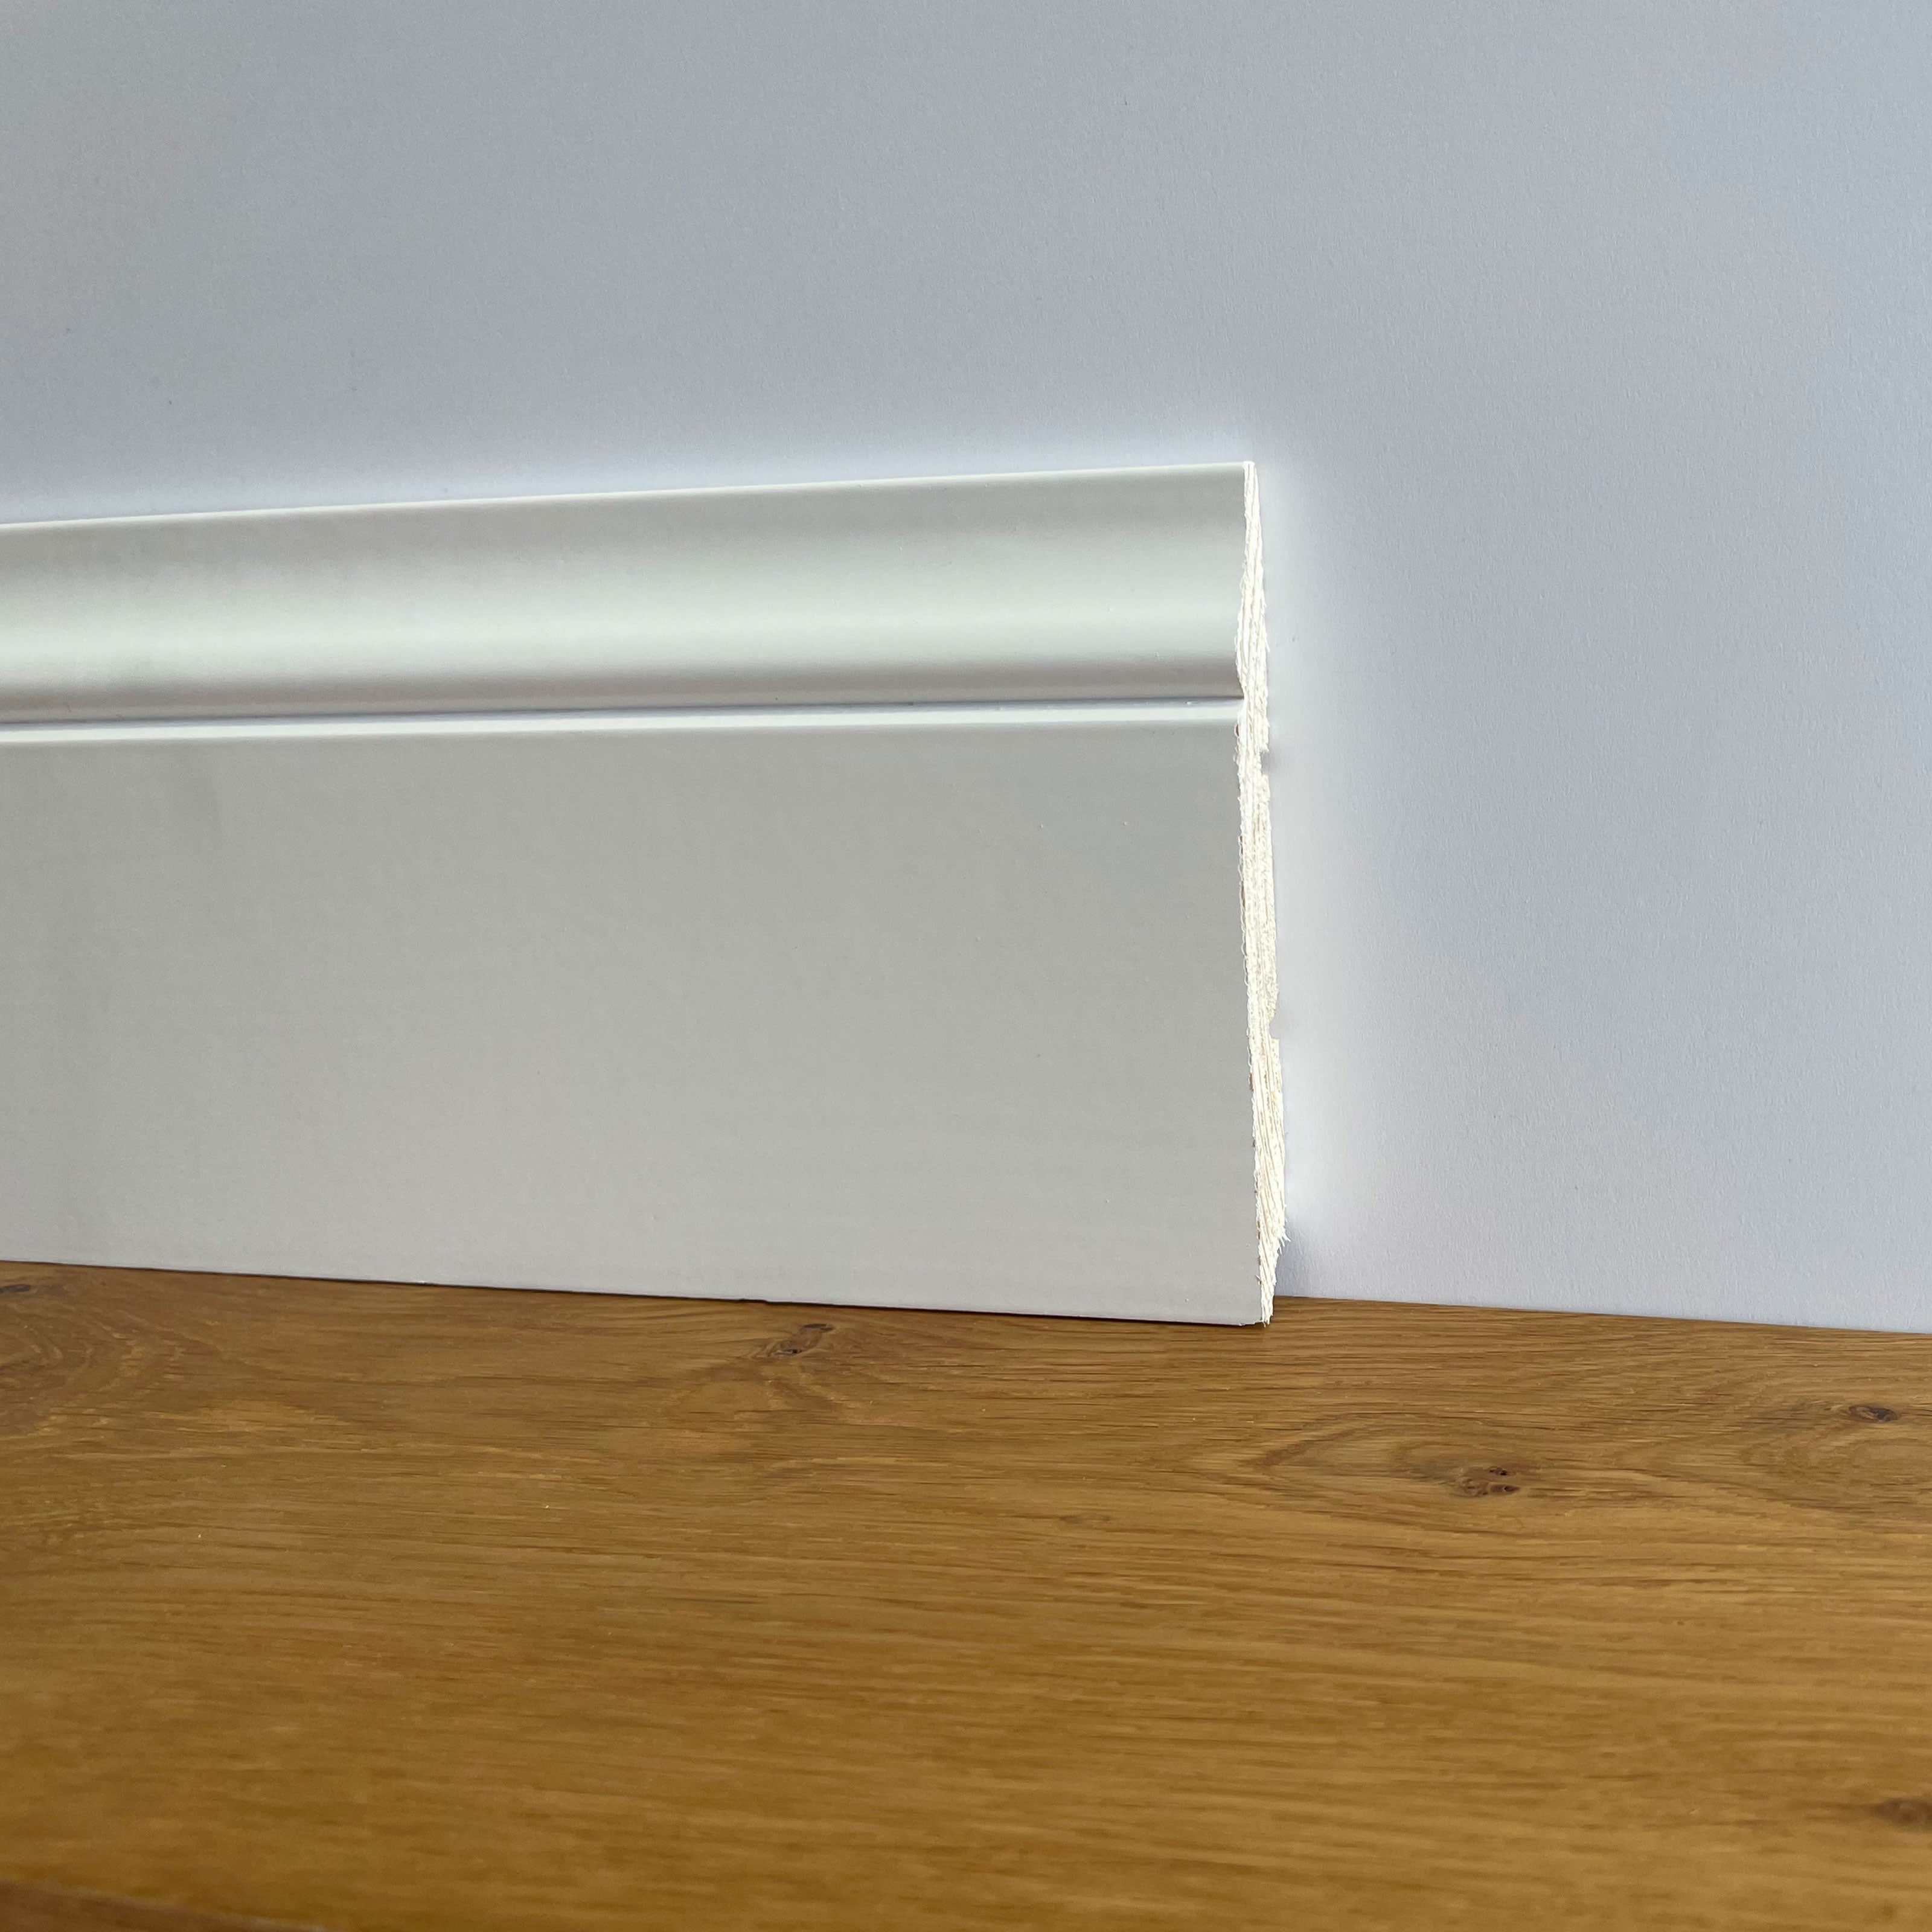 Battiscopa PREMIUM in legno MASSELLO mod.BAROCCO 120x16 laccato bianco liscio (prezzo al metro) Eternal Parquet